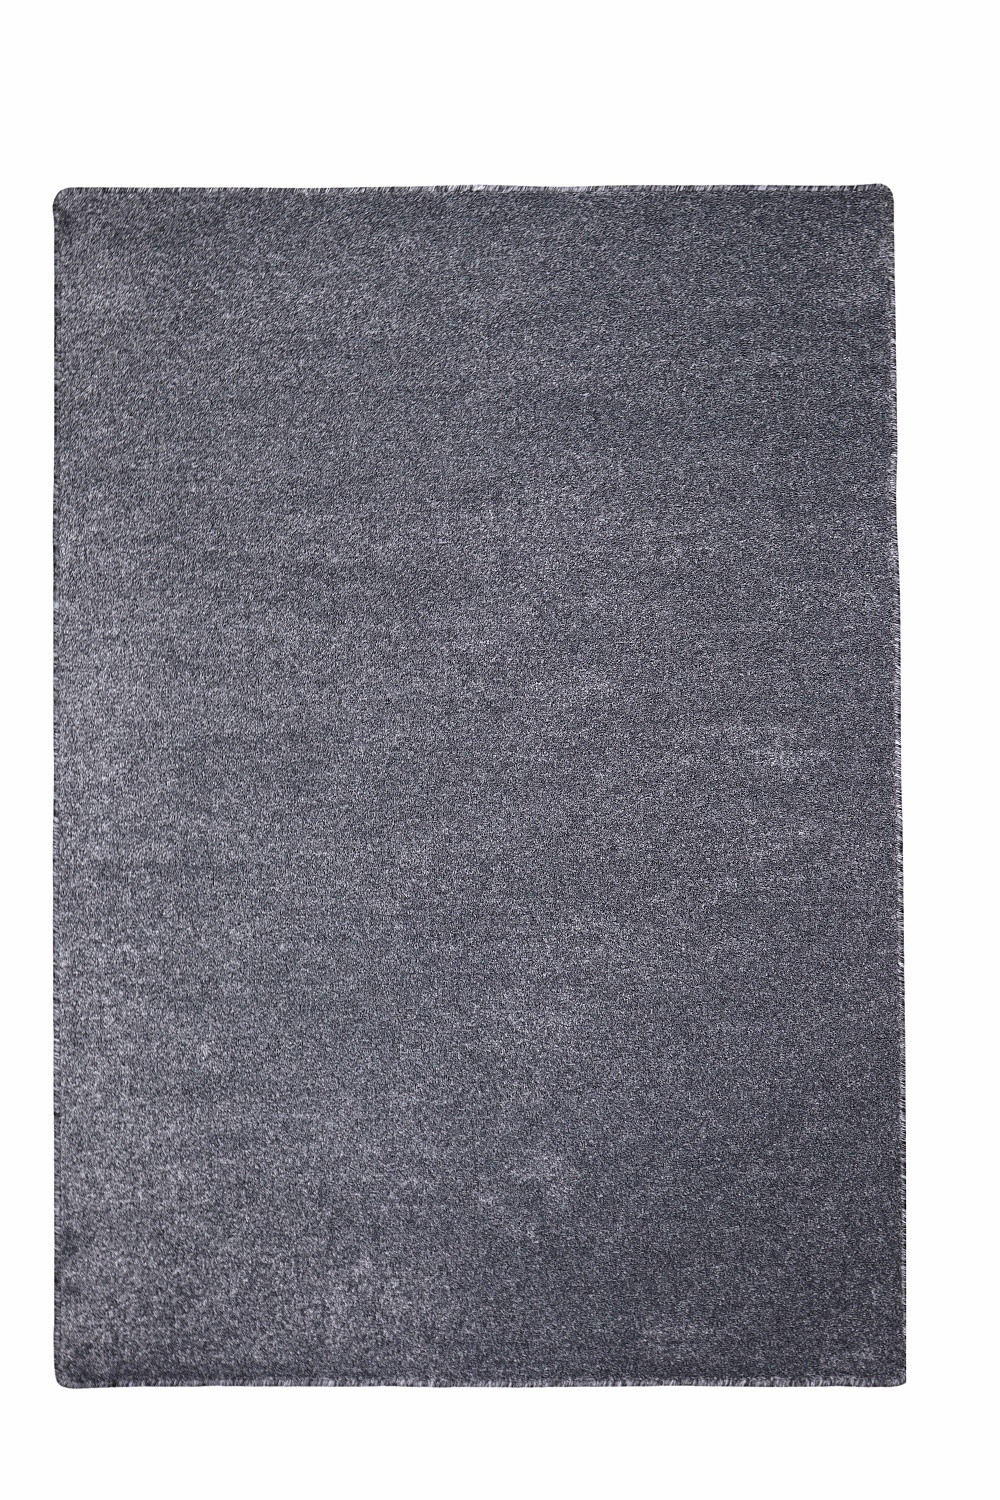 Levně Vopi koberce Kusový koberec Apollo Soft antra - 200x250 cm